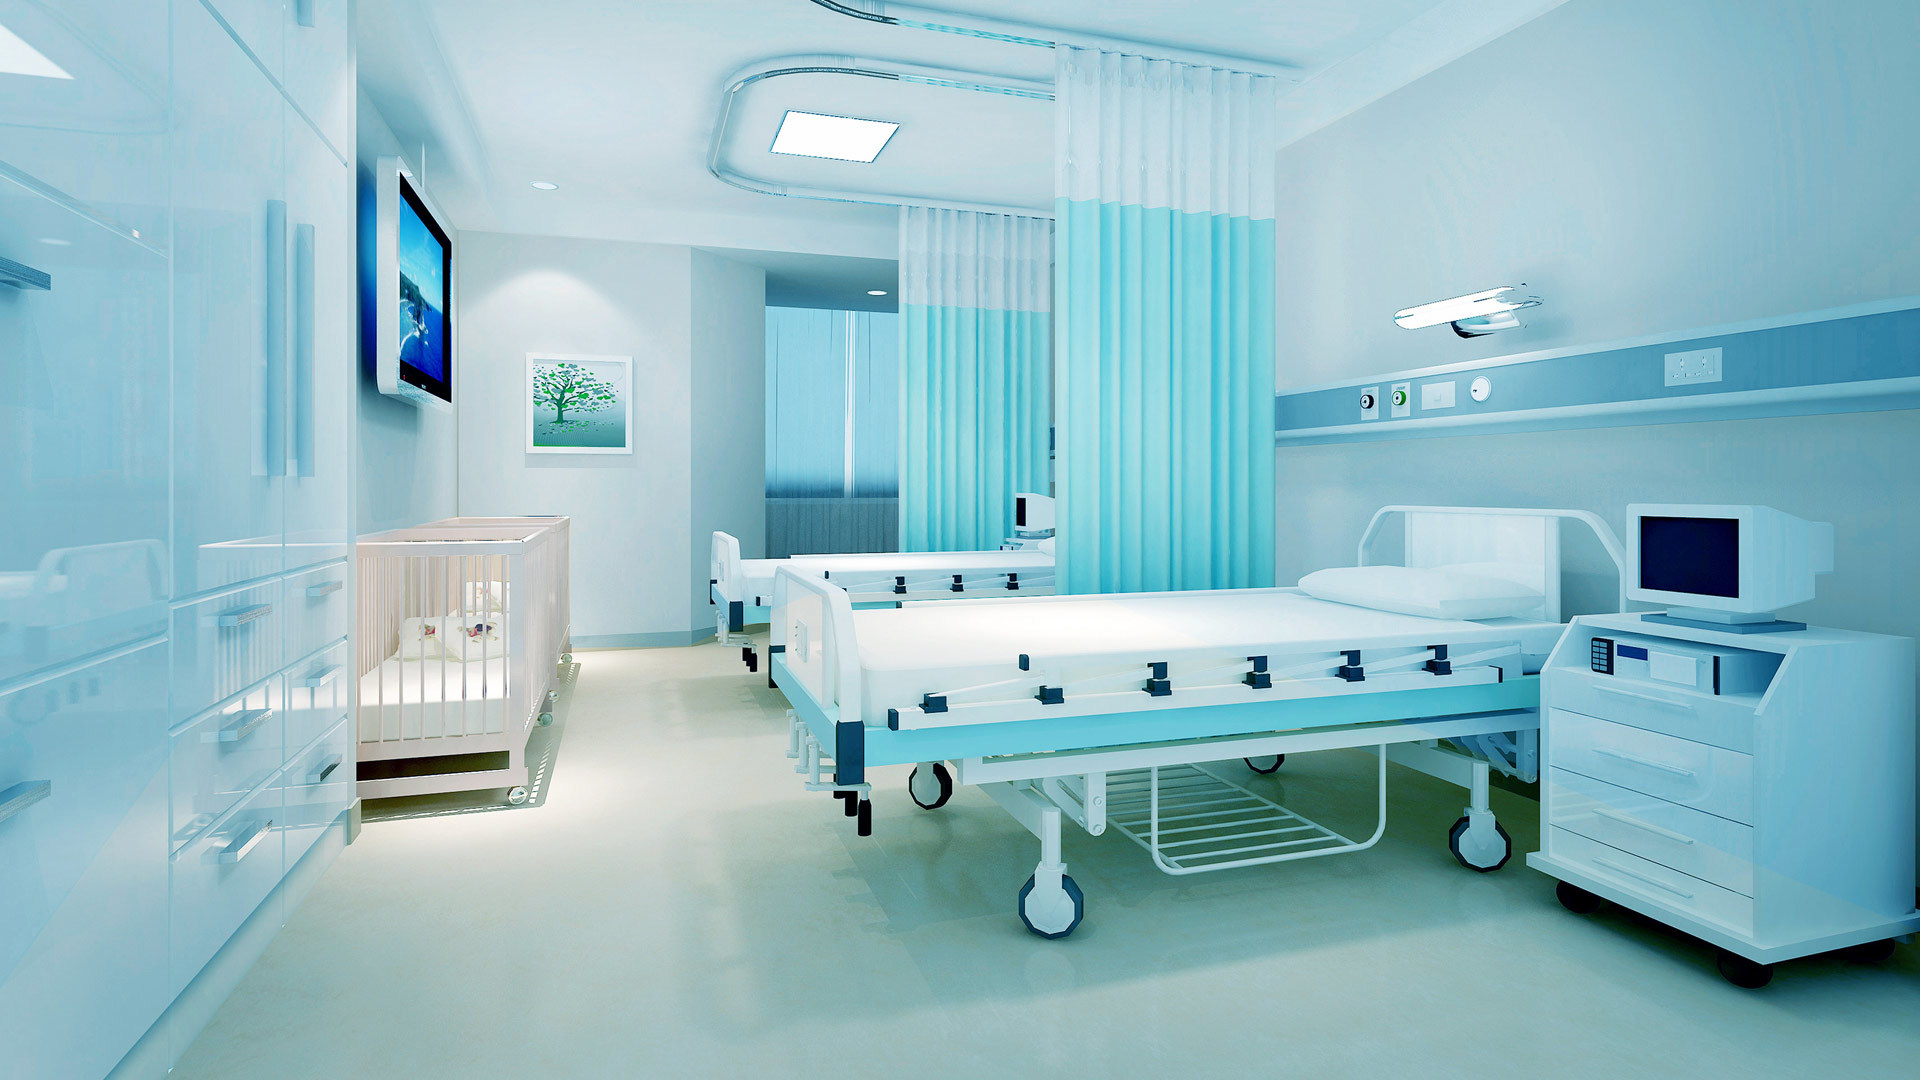 公司主要产品为手术床、护理床、病床、医用车、床、柜、椅、手术室等系列产品。